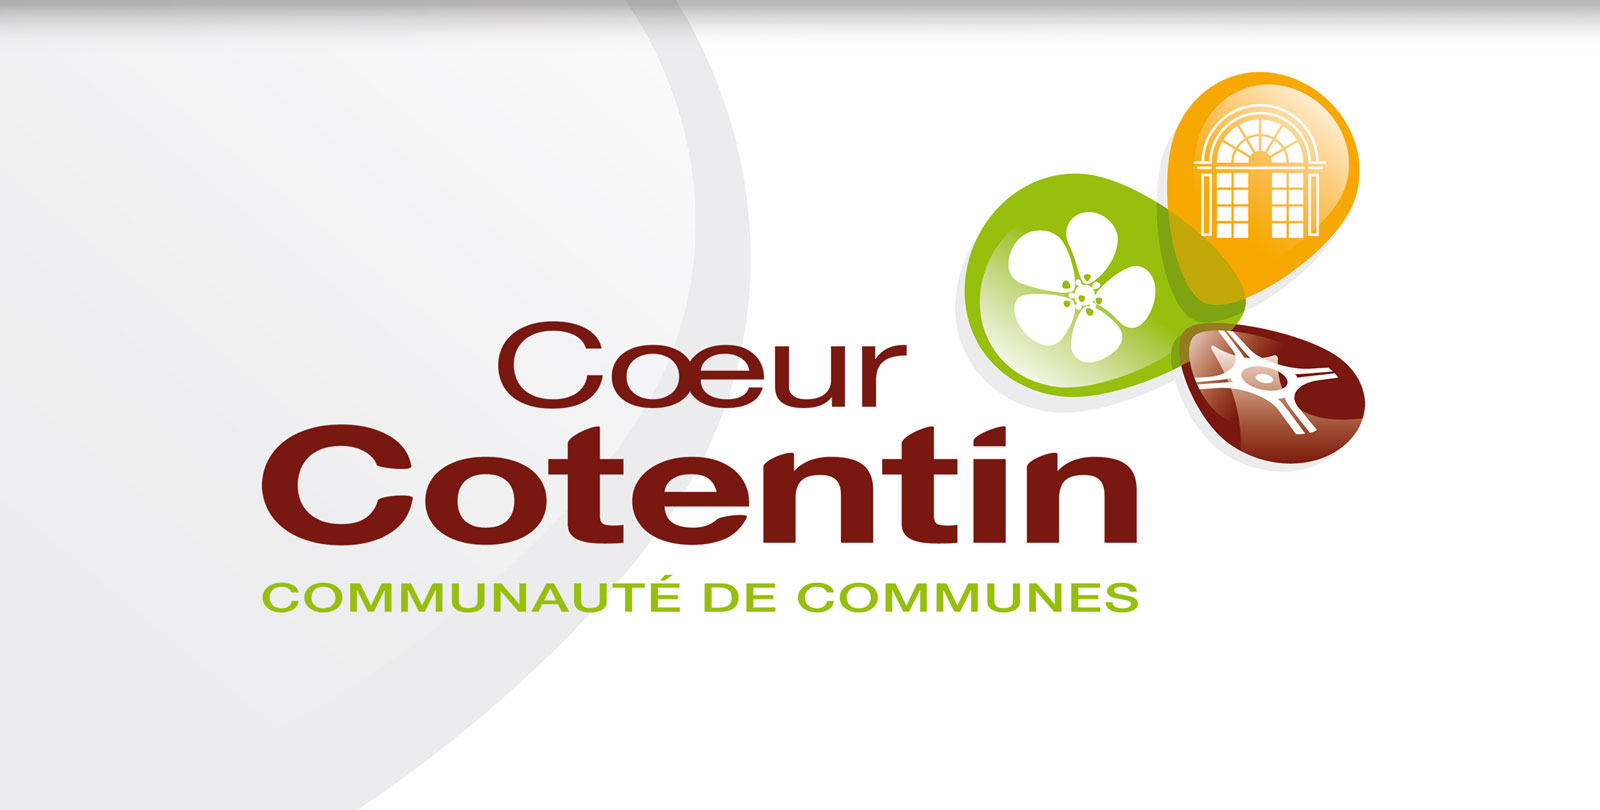 Cœur de Cotentin – Communauté de communes